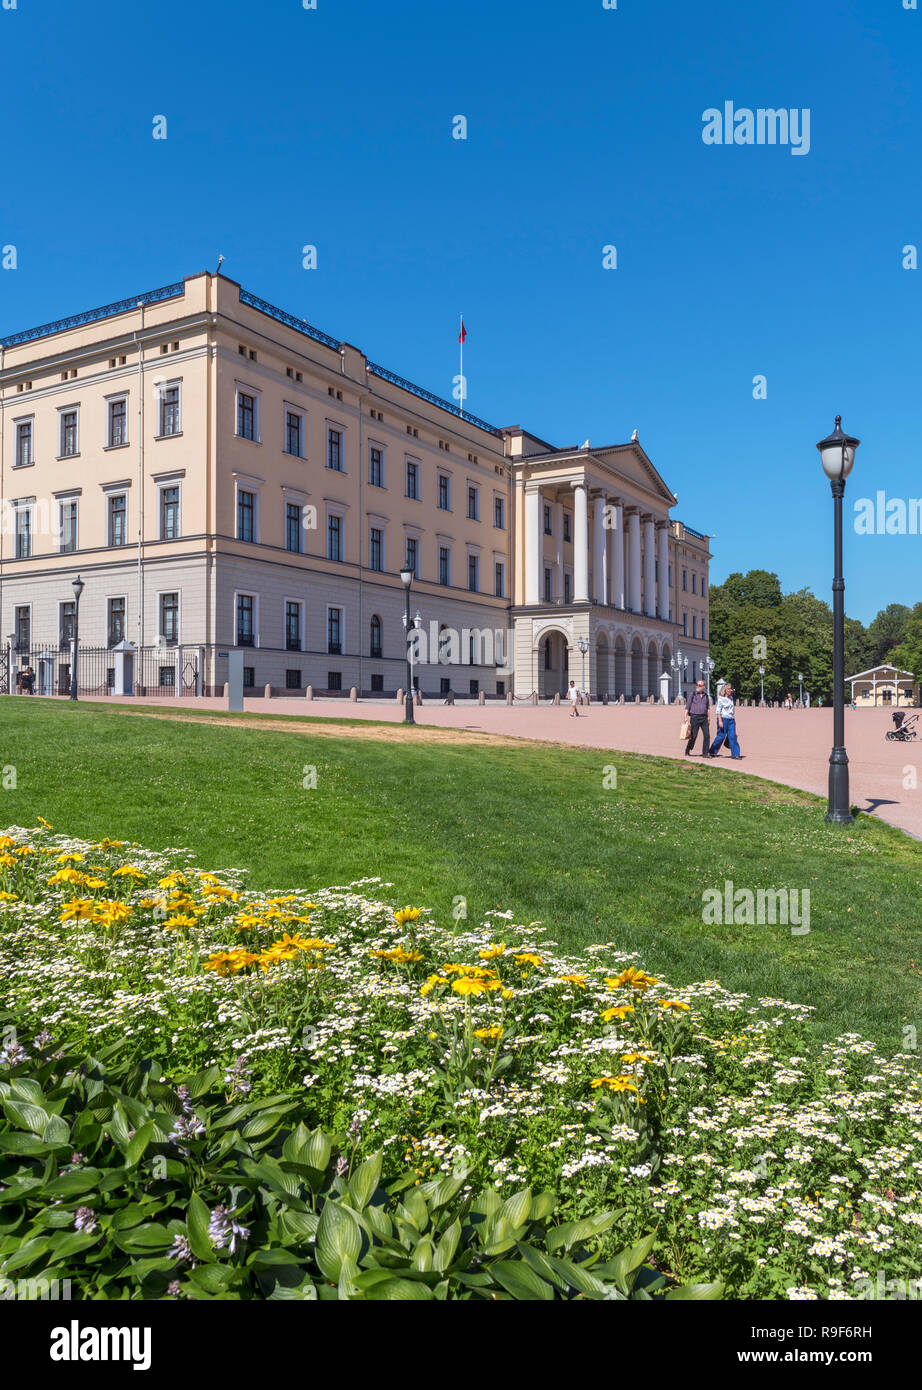 The Royal Palace (Det kongelige slott), Slottsparken, Oslo, Norway Stock Photo